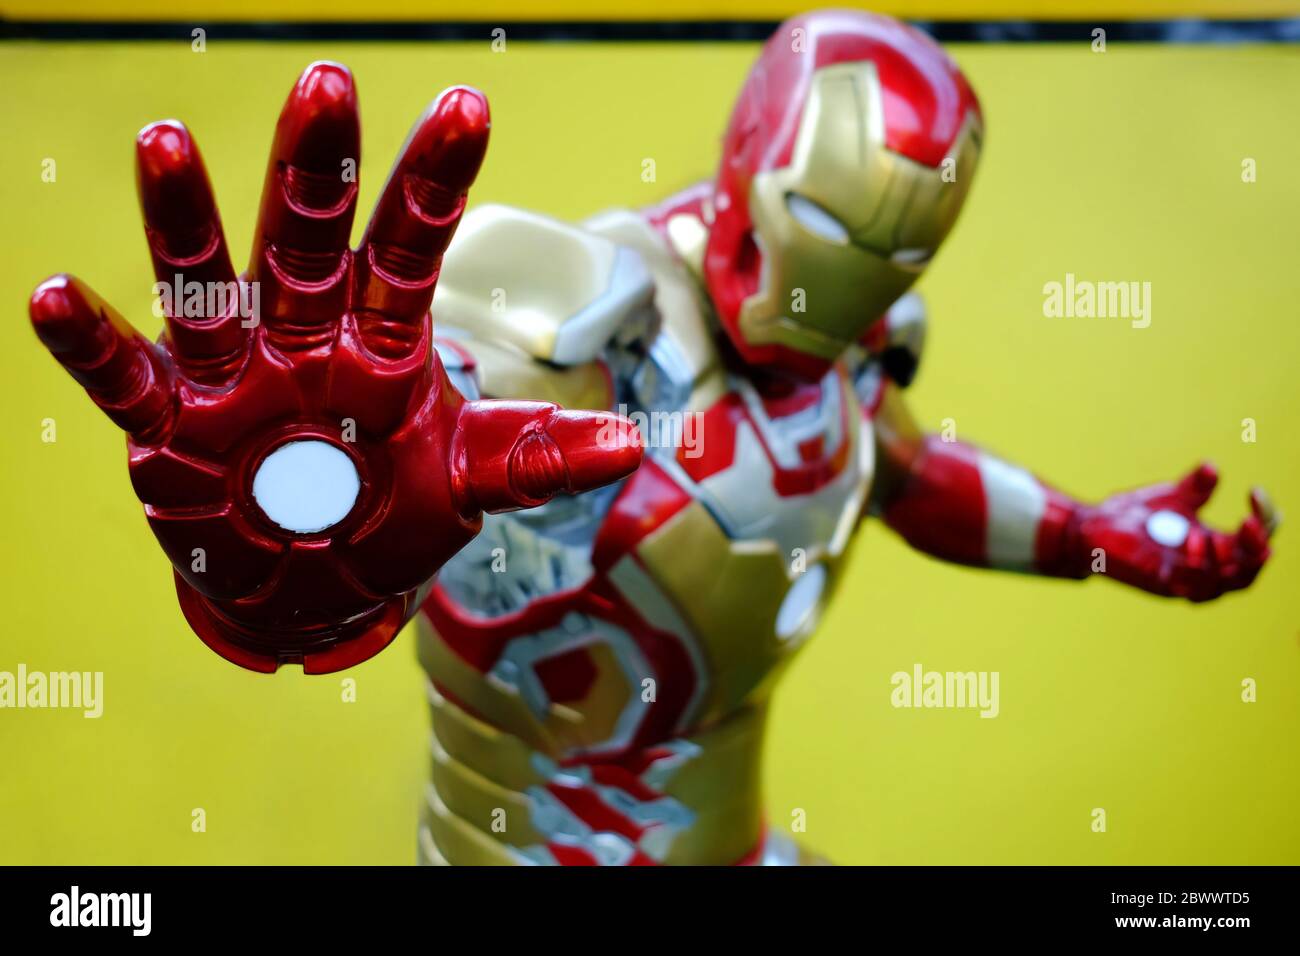 BANGKOK, THAÏLANDE - 25 AVRIL 2019 : gros plan main de Iron Man Model, Iron Man est un personnage célèbre dans Avenger animation qui a été créé par Stan Lee. Banque D'Images